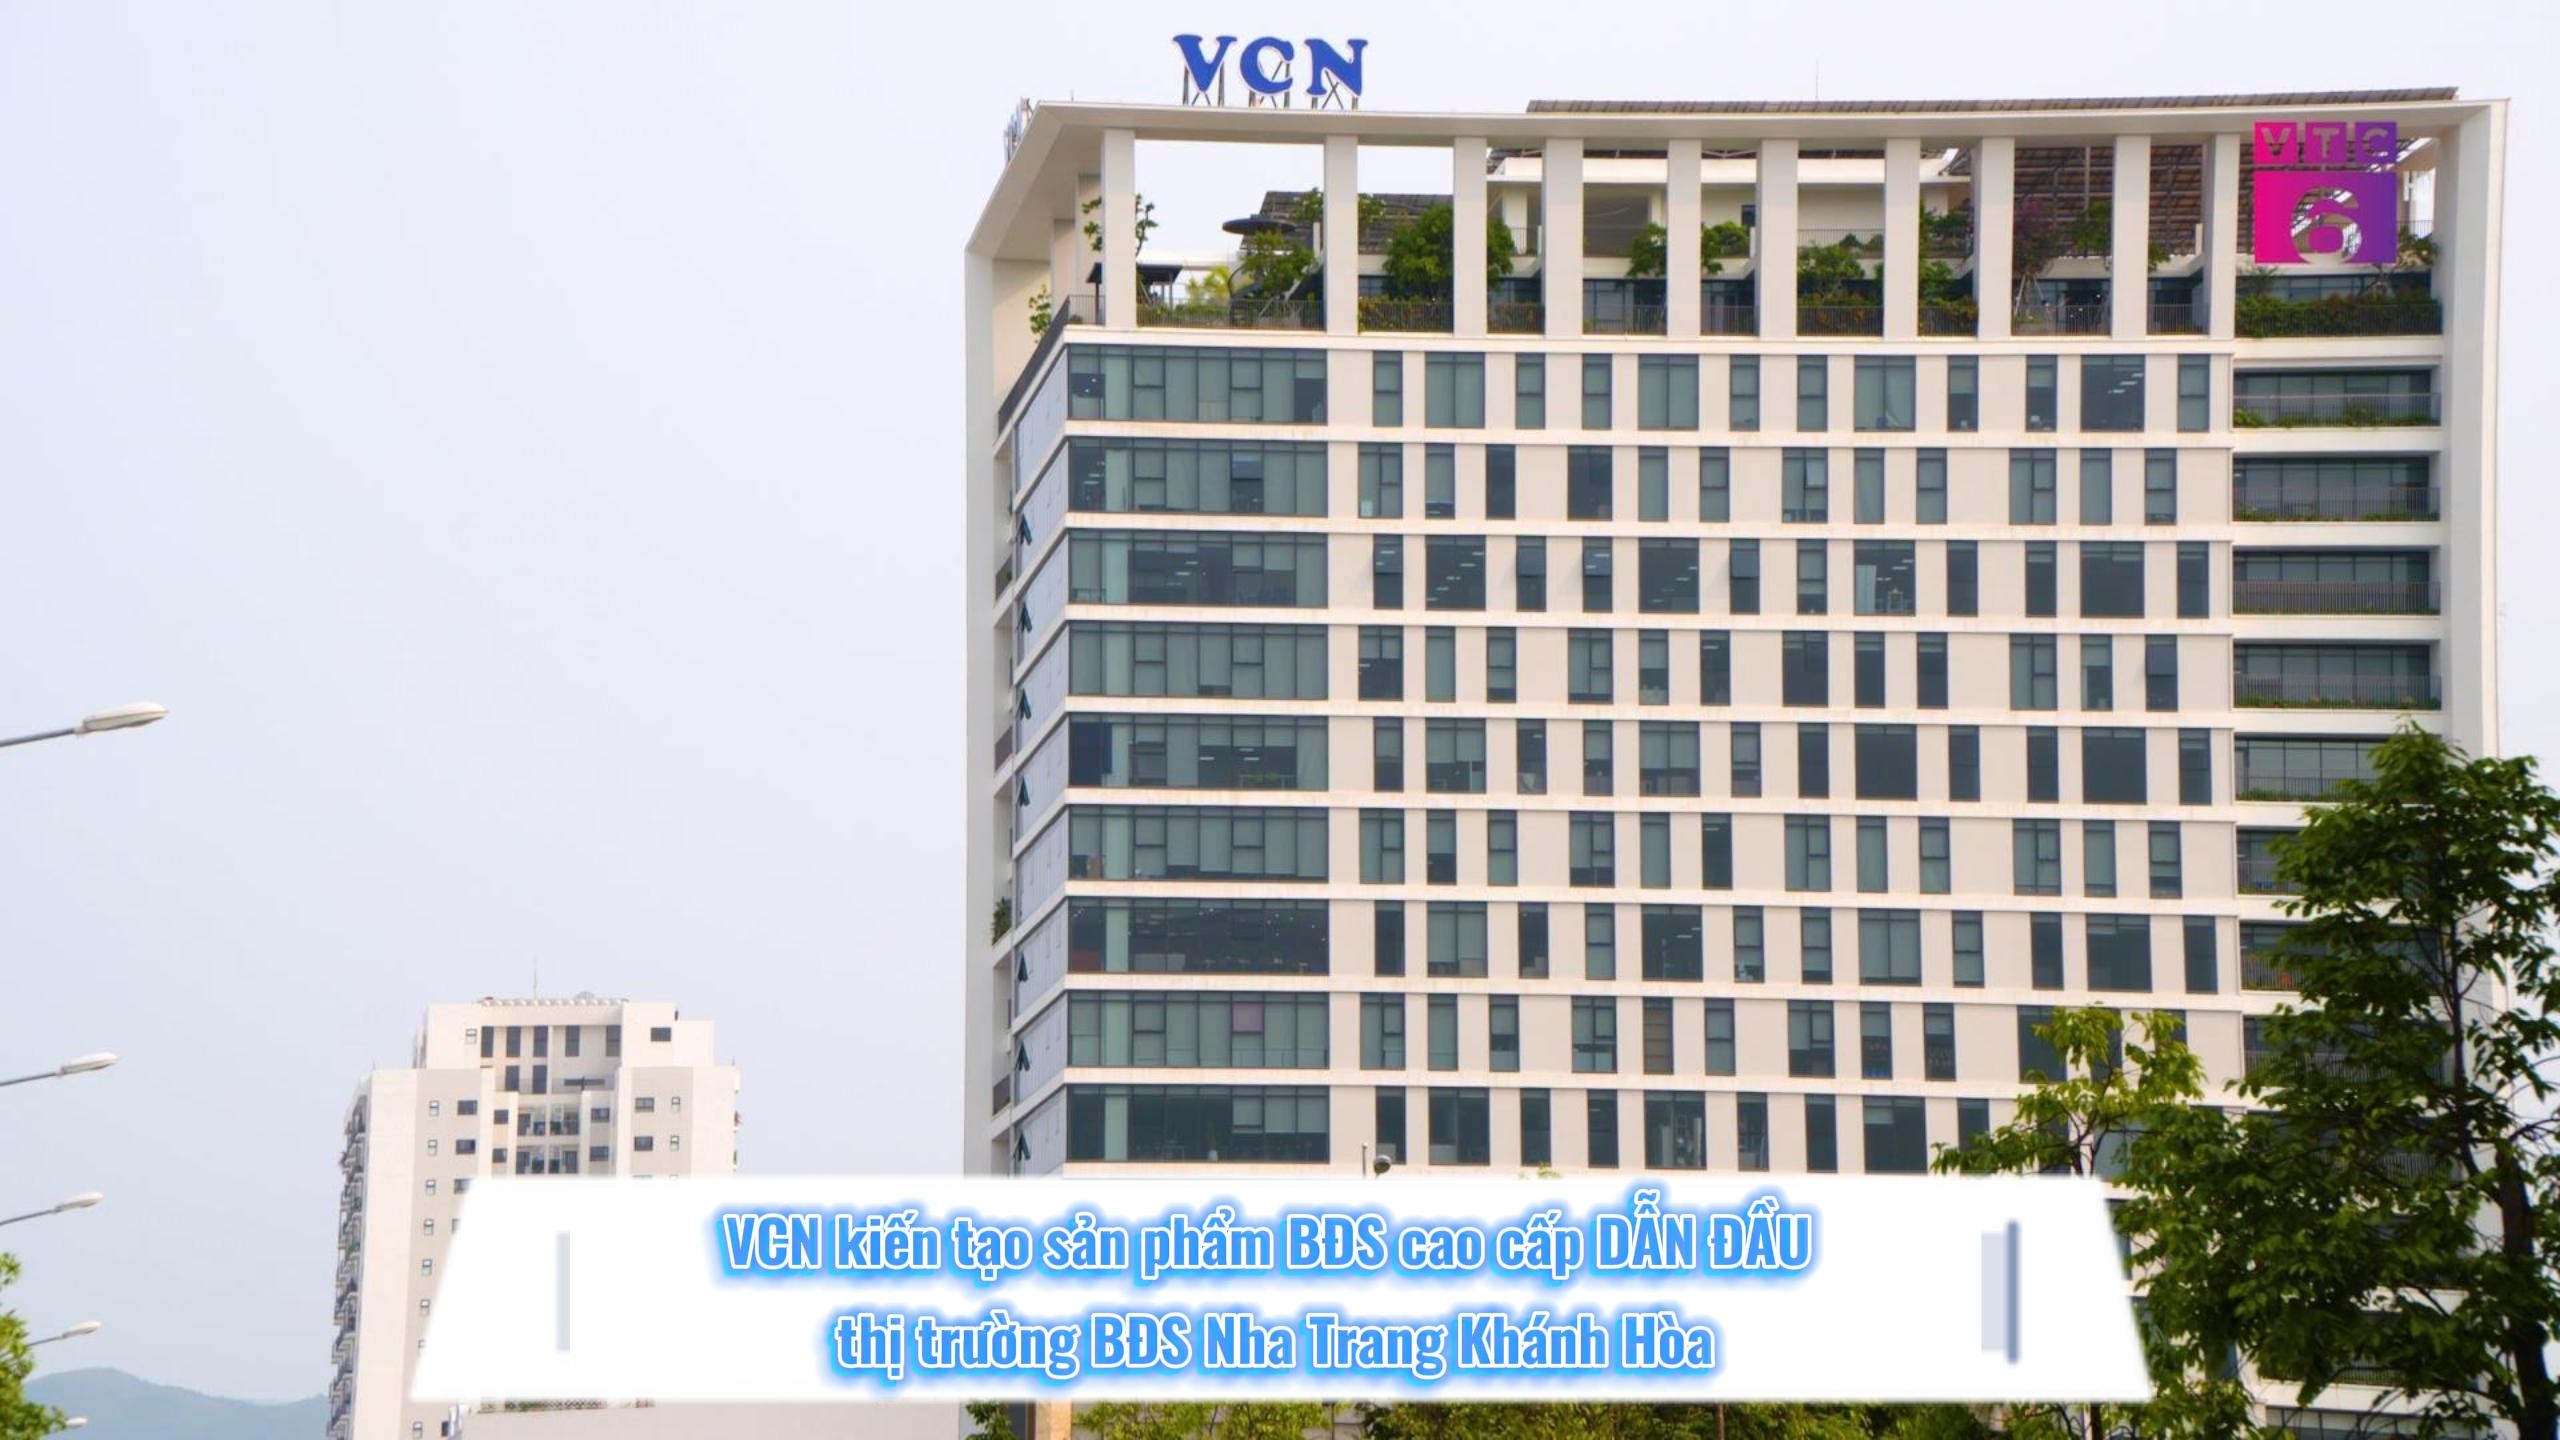 VCN kiến tạo sản phẩm BĐS cao cấp DẪN ĐẦU thị trường Nha Trang – Khánh Hòa